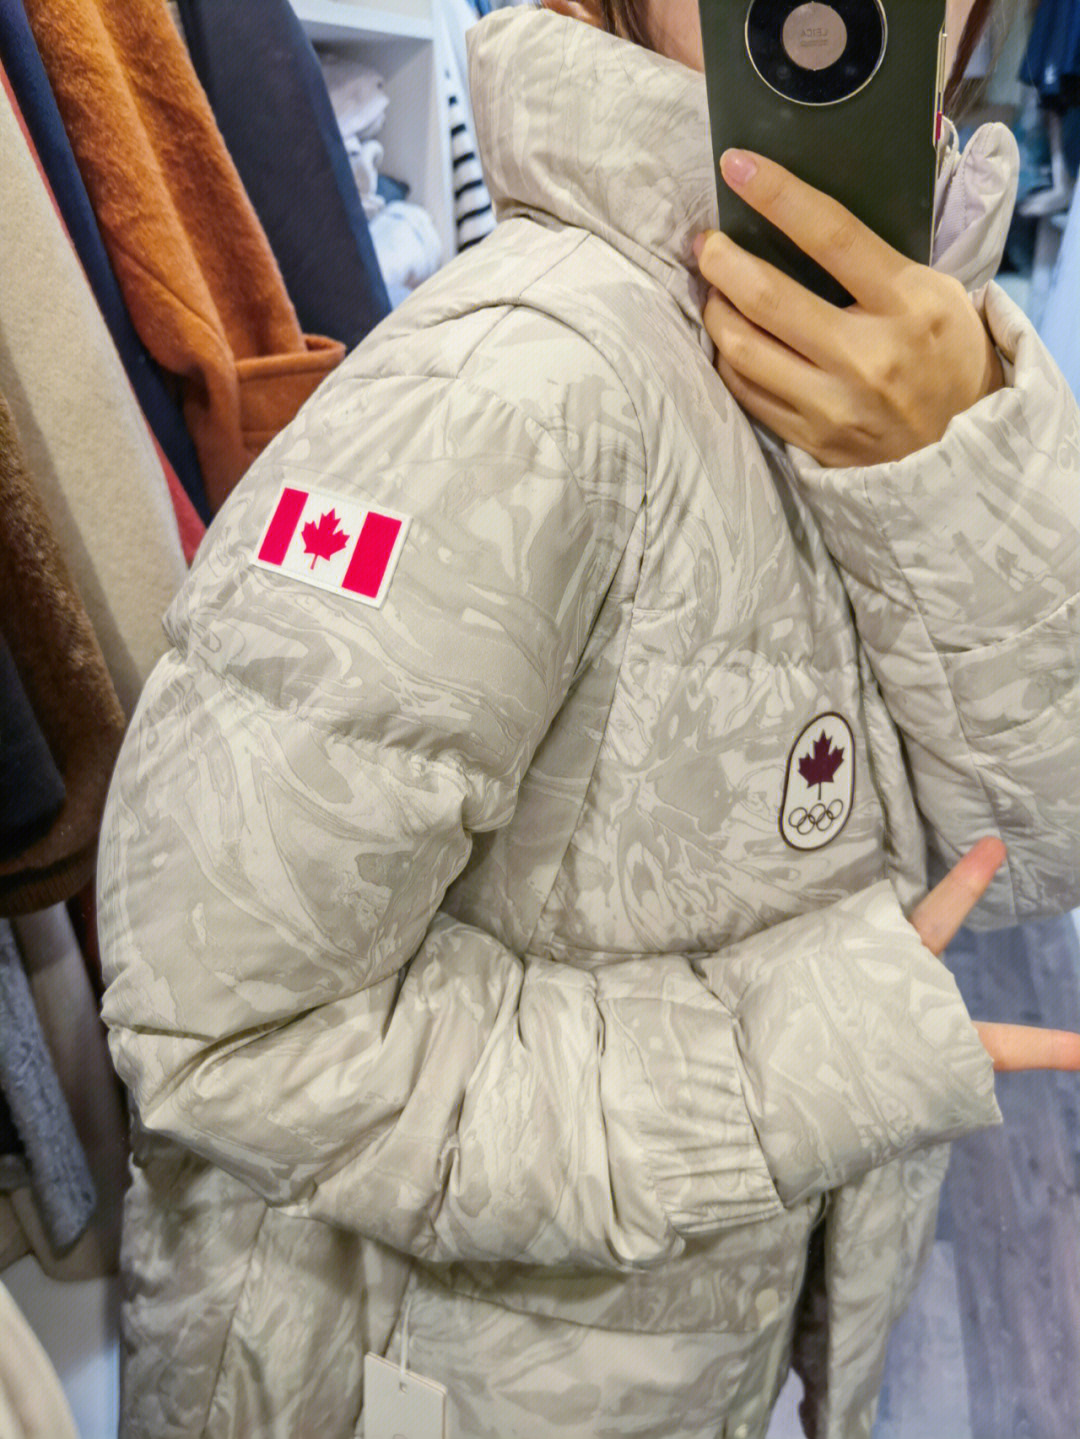 加拿大冬奥羽绒服牌子图片